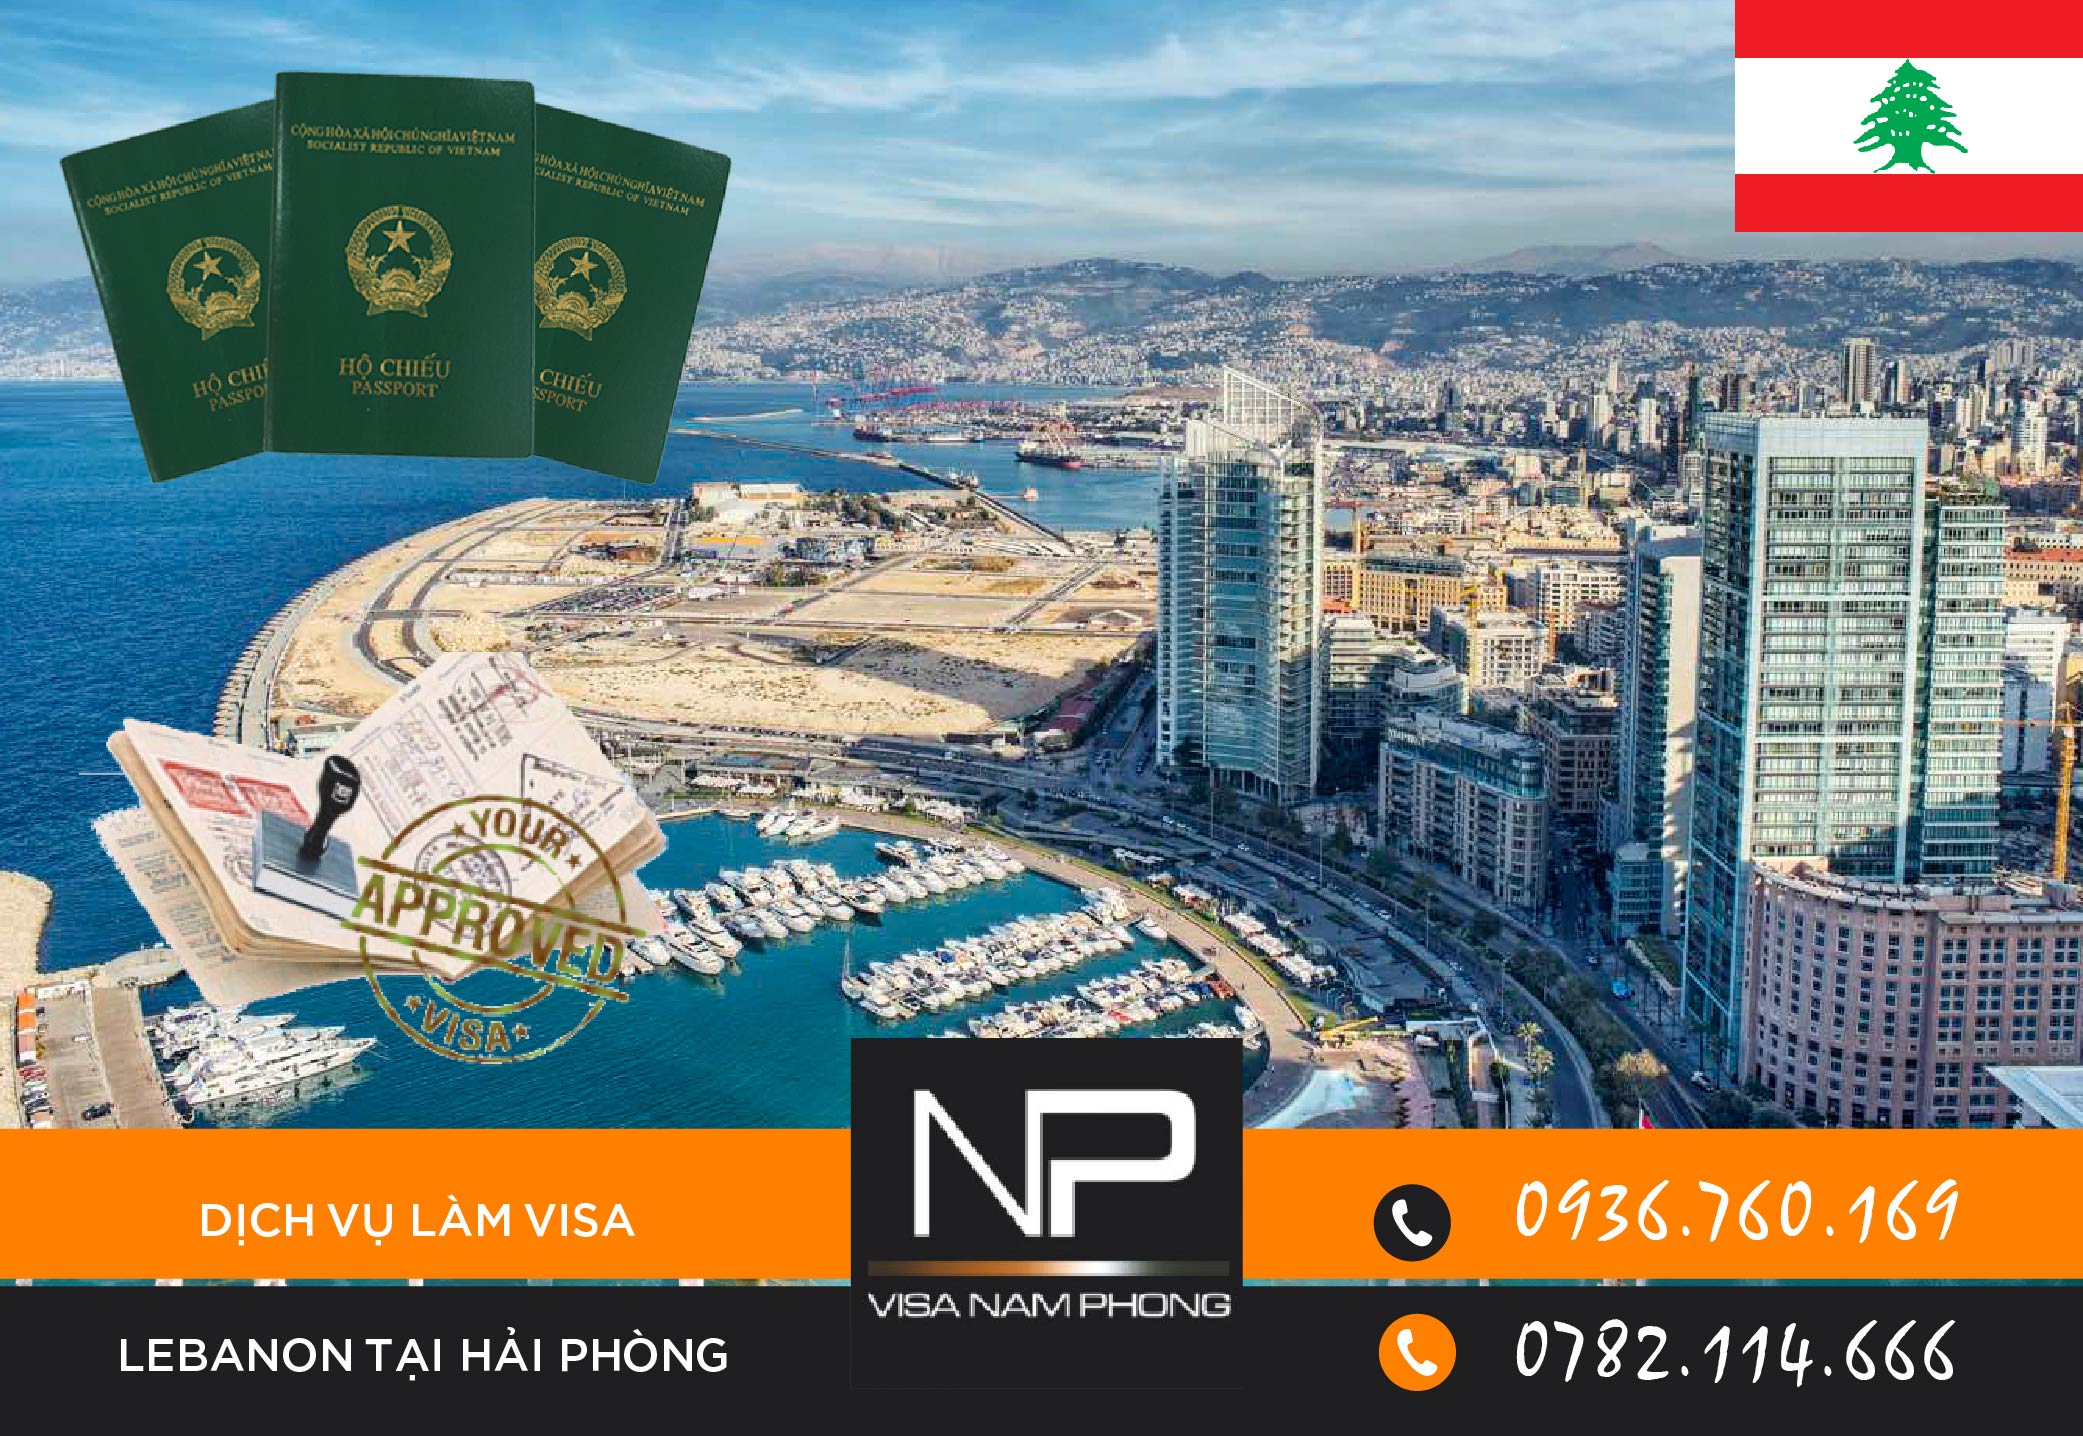 Dịch vụ làm visa Lebanon tại Hải Phòng